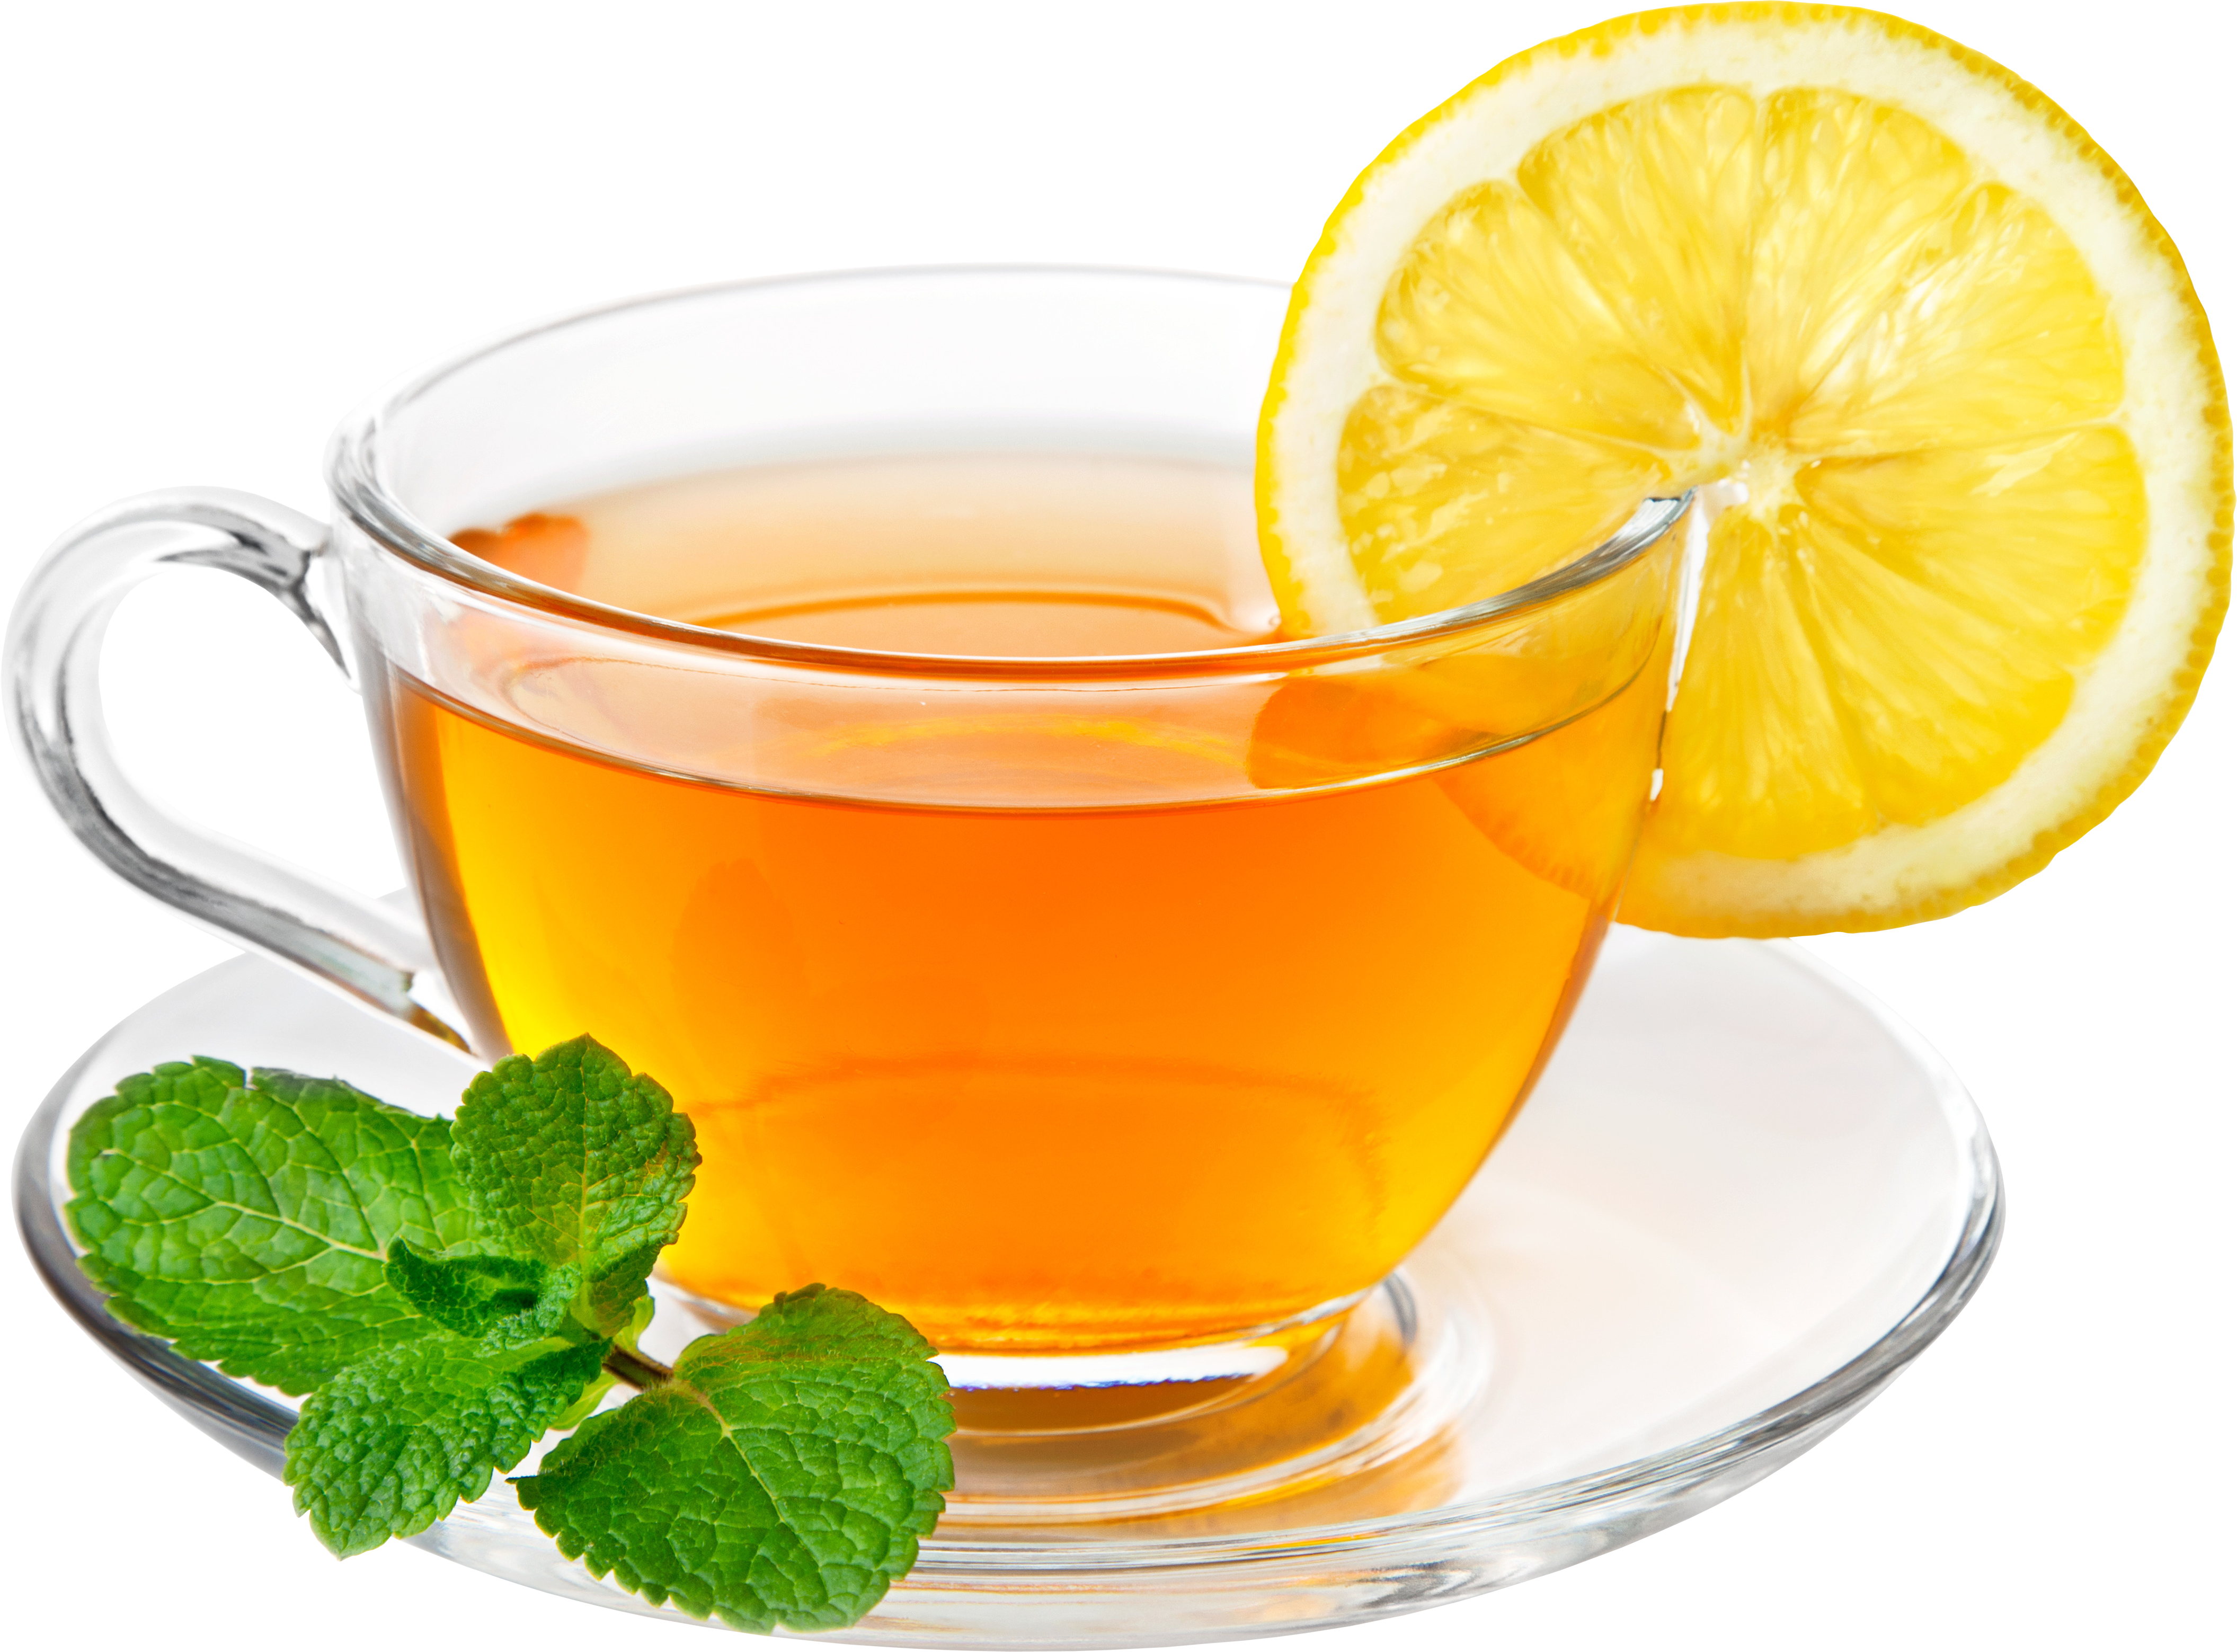 Чай с лимоном PNG